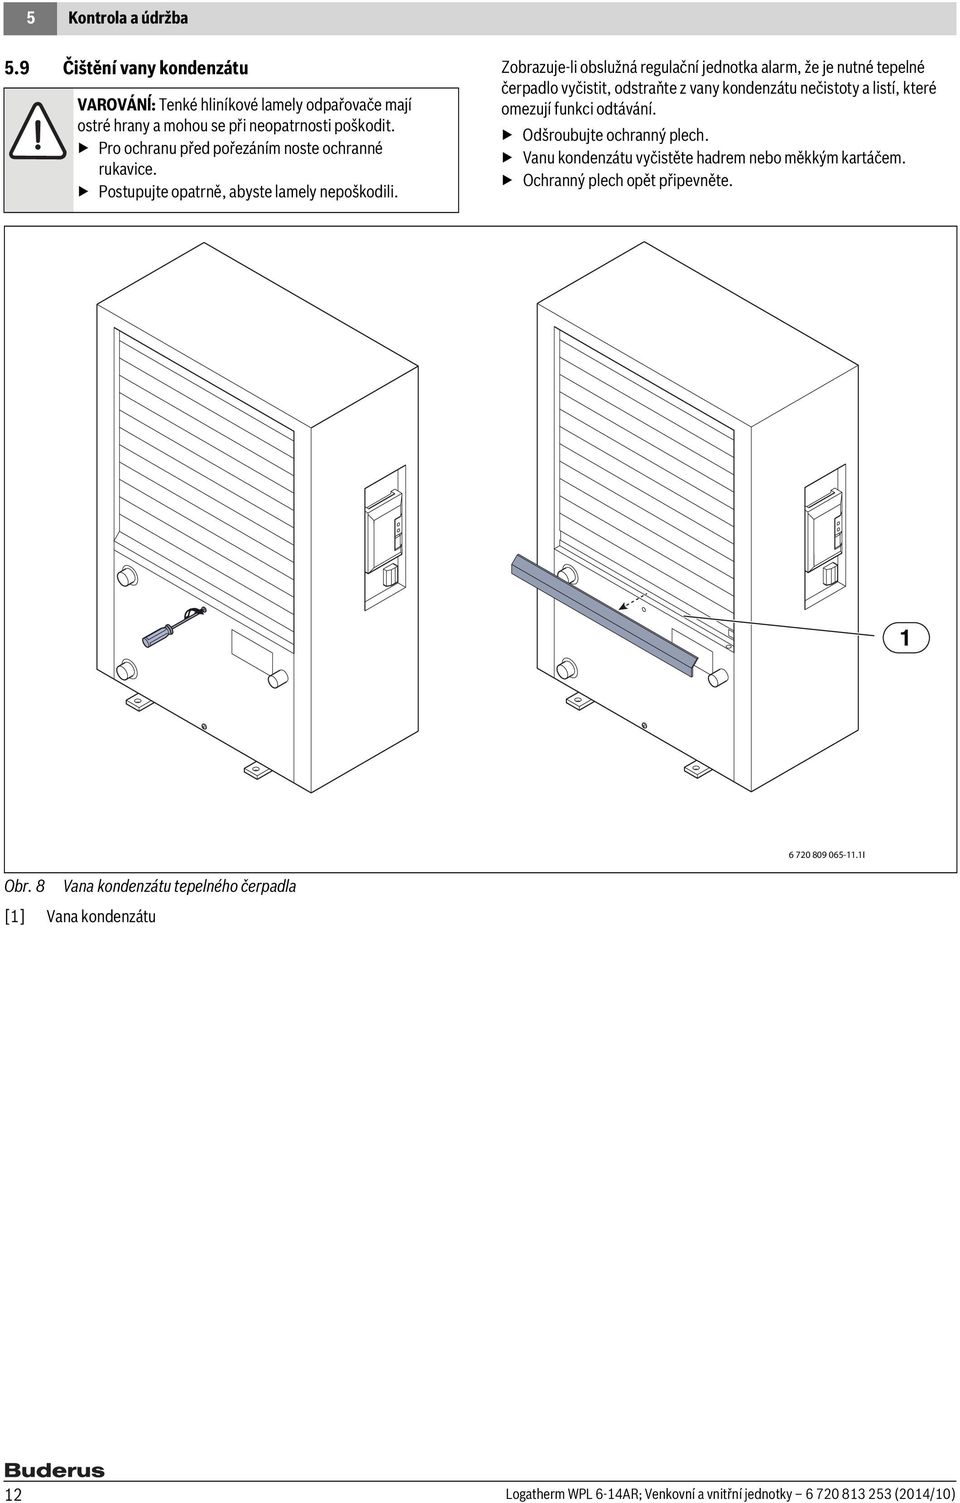 Návod k obsluze Logatherm WPL AR 6-14 Venkovní a vnitřní jednotky. Tepelné  čerpadlo vzduch-voda. Před obsluhou pozorně pročtěte. 230 V 1N~/400 V 3N~ -  PDF Free Download